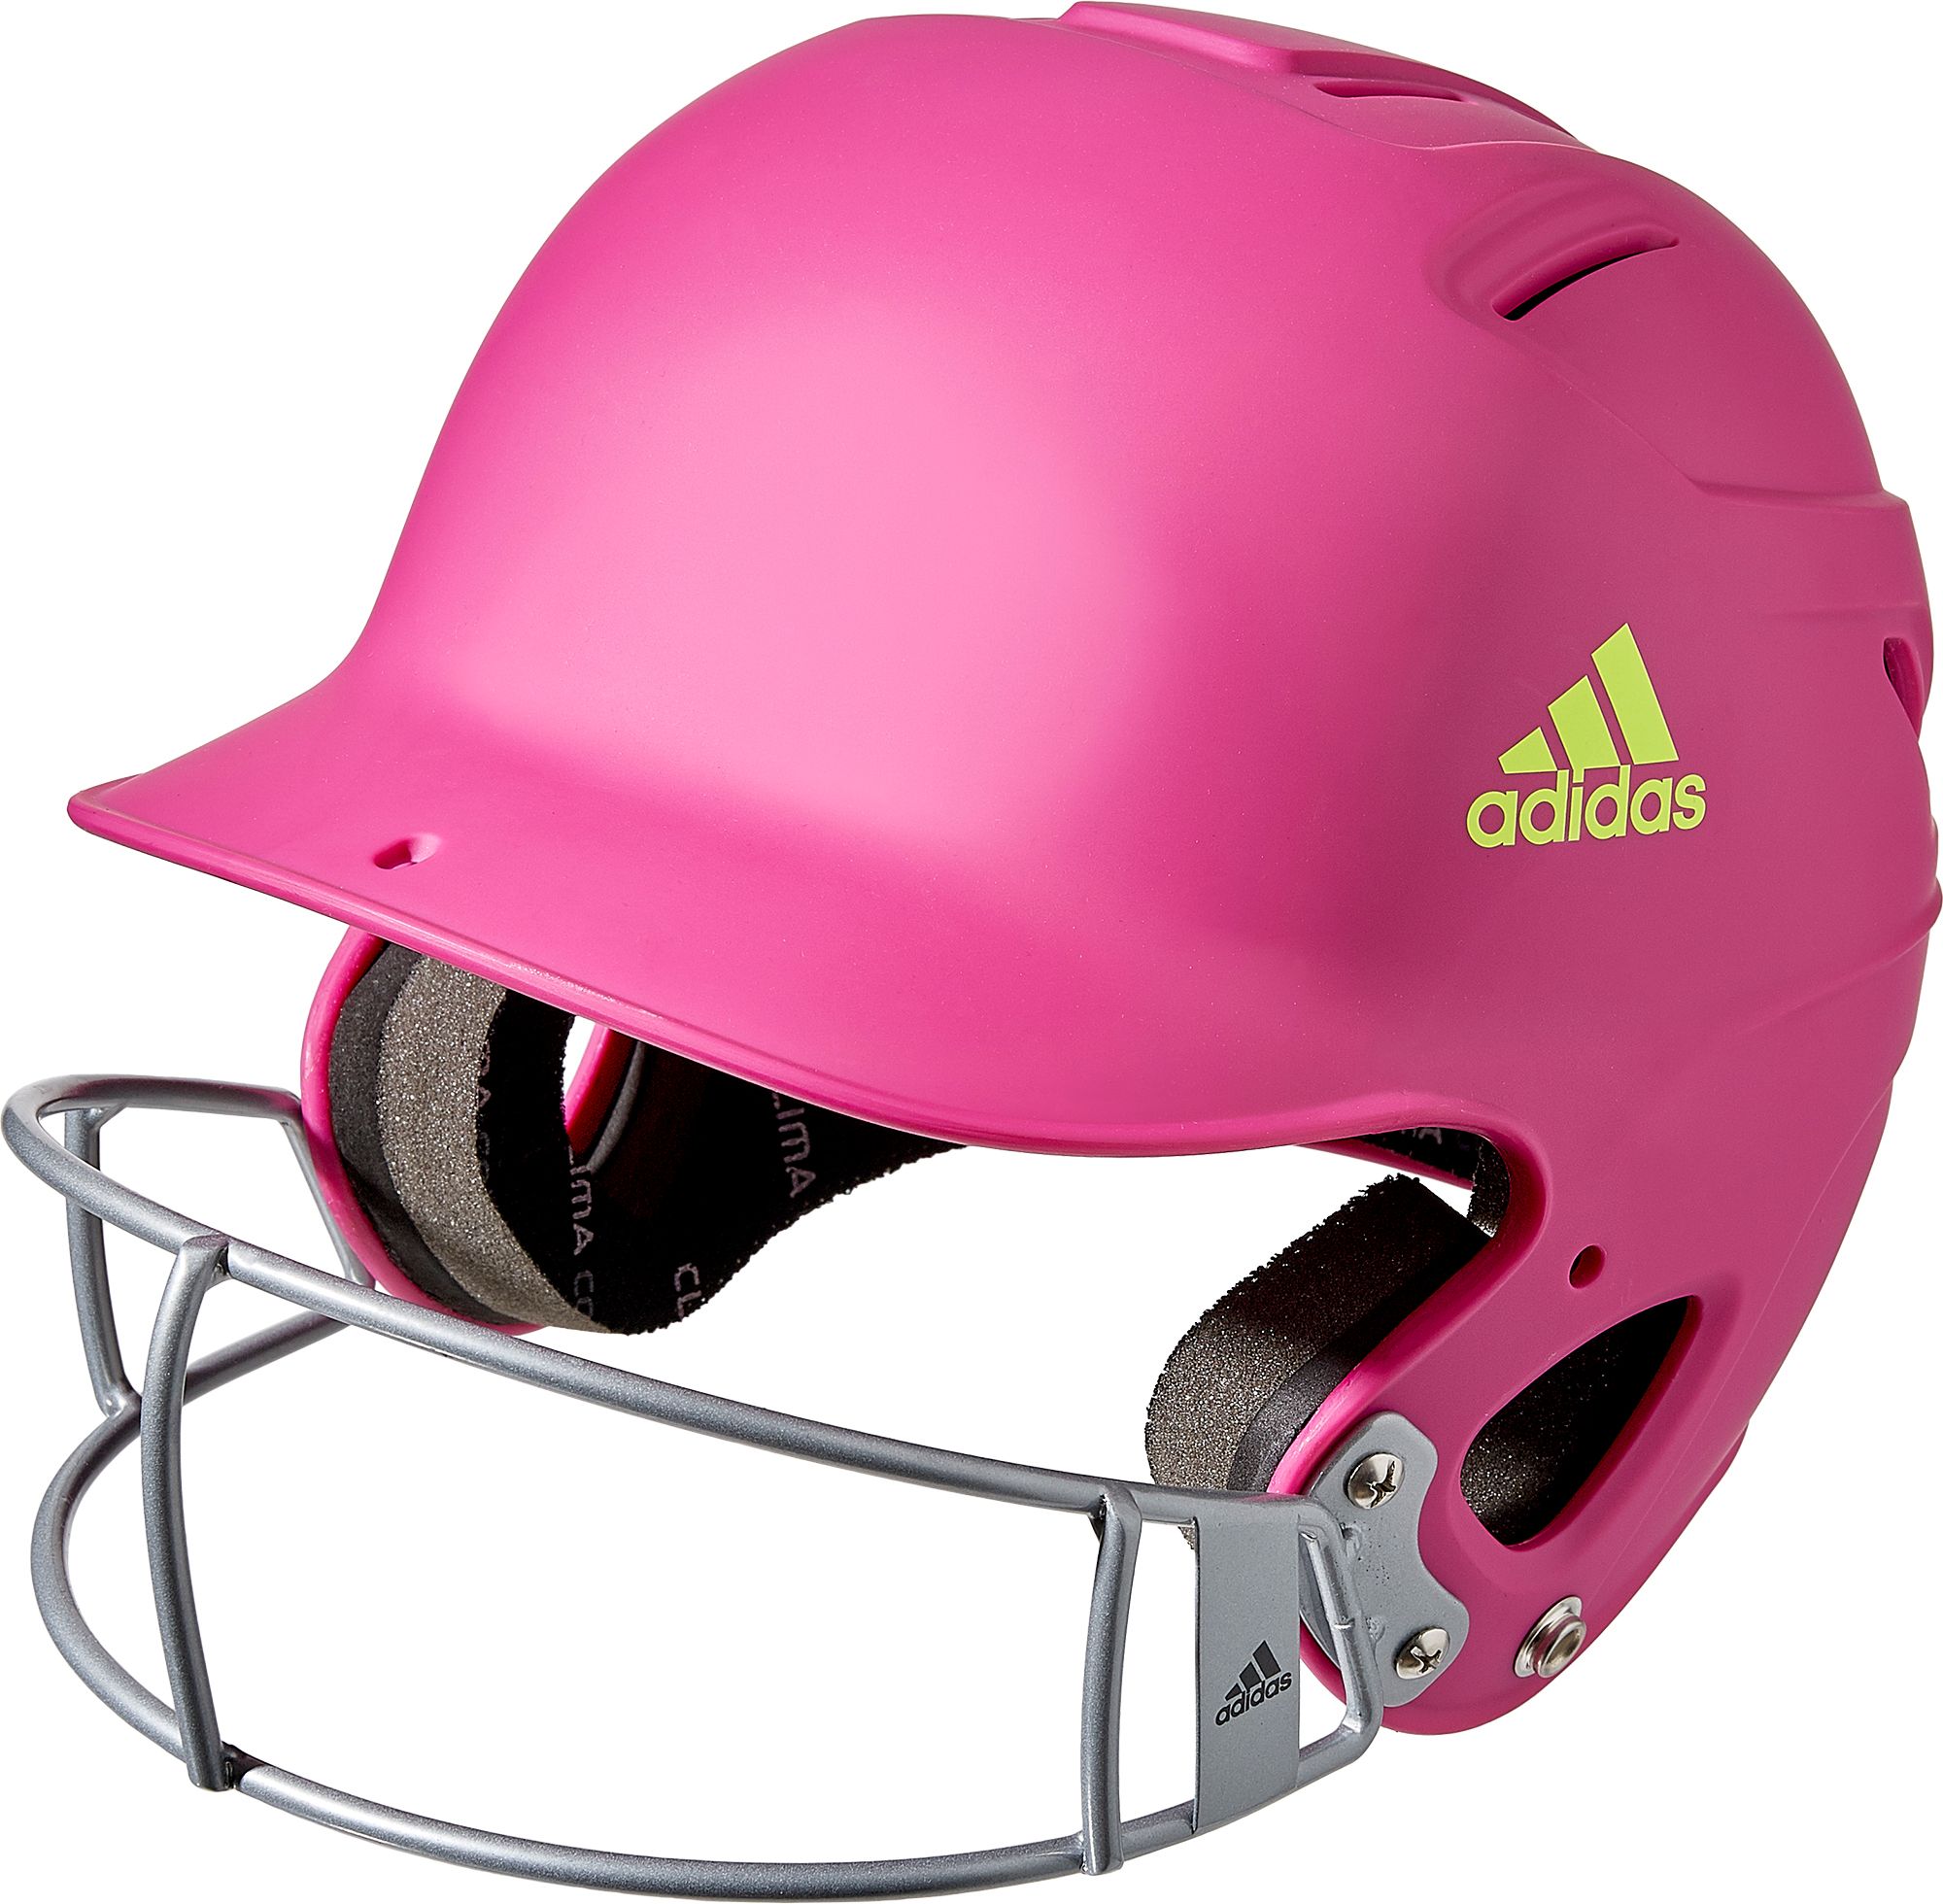 adidas softball helmet